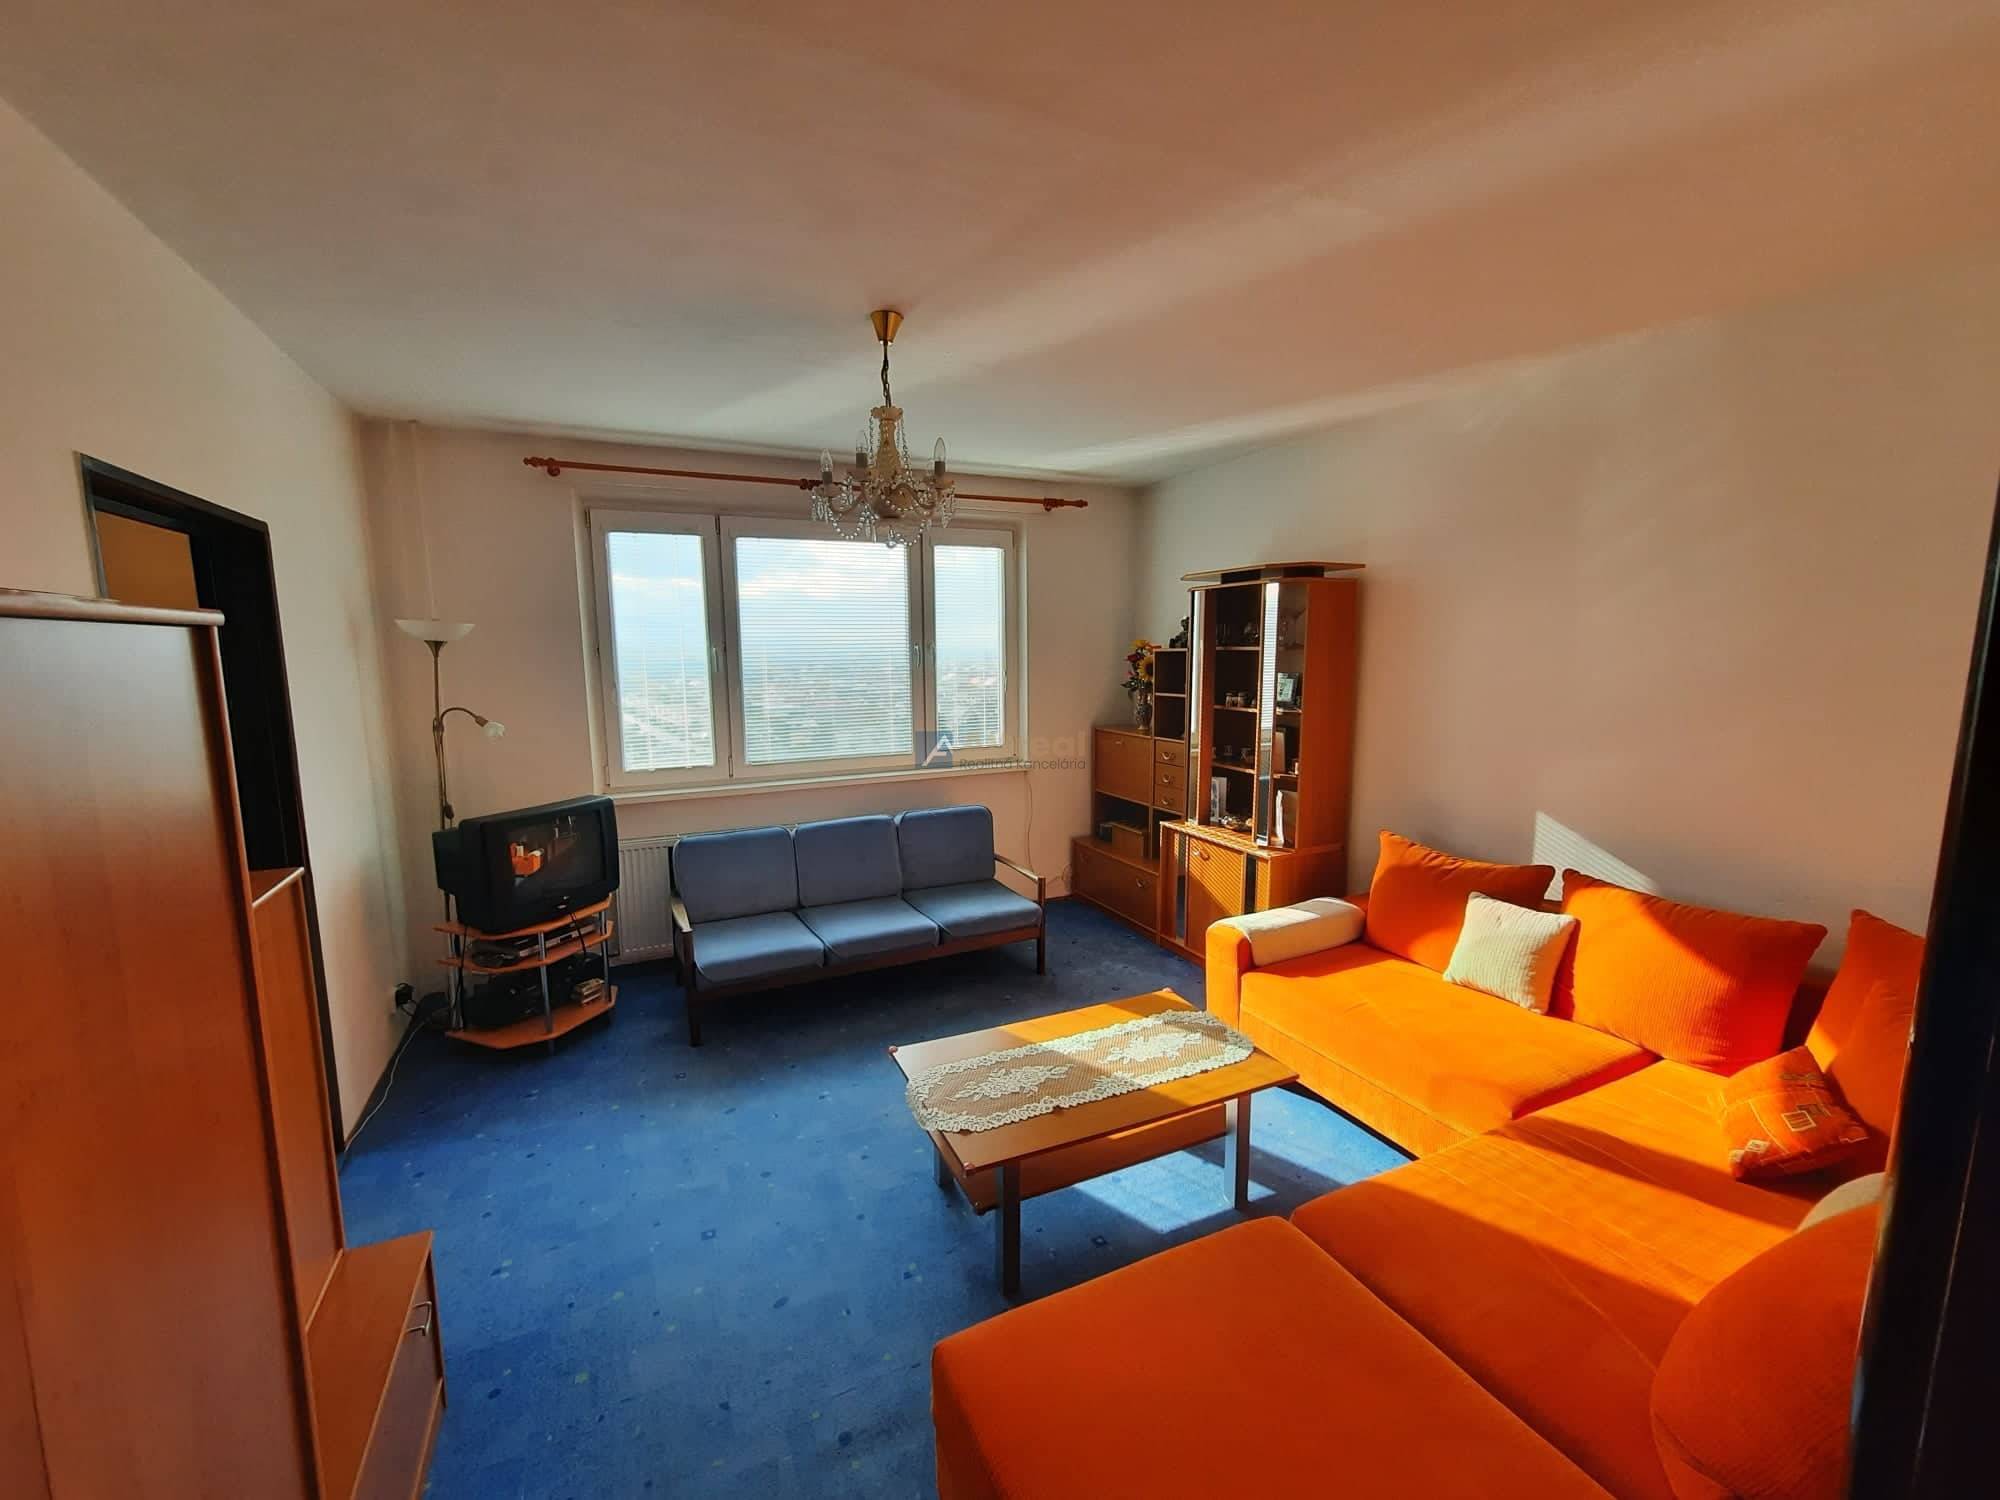 3 - izbový byt s balkónom, Martin - Priekopa.